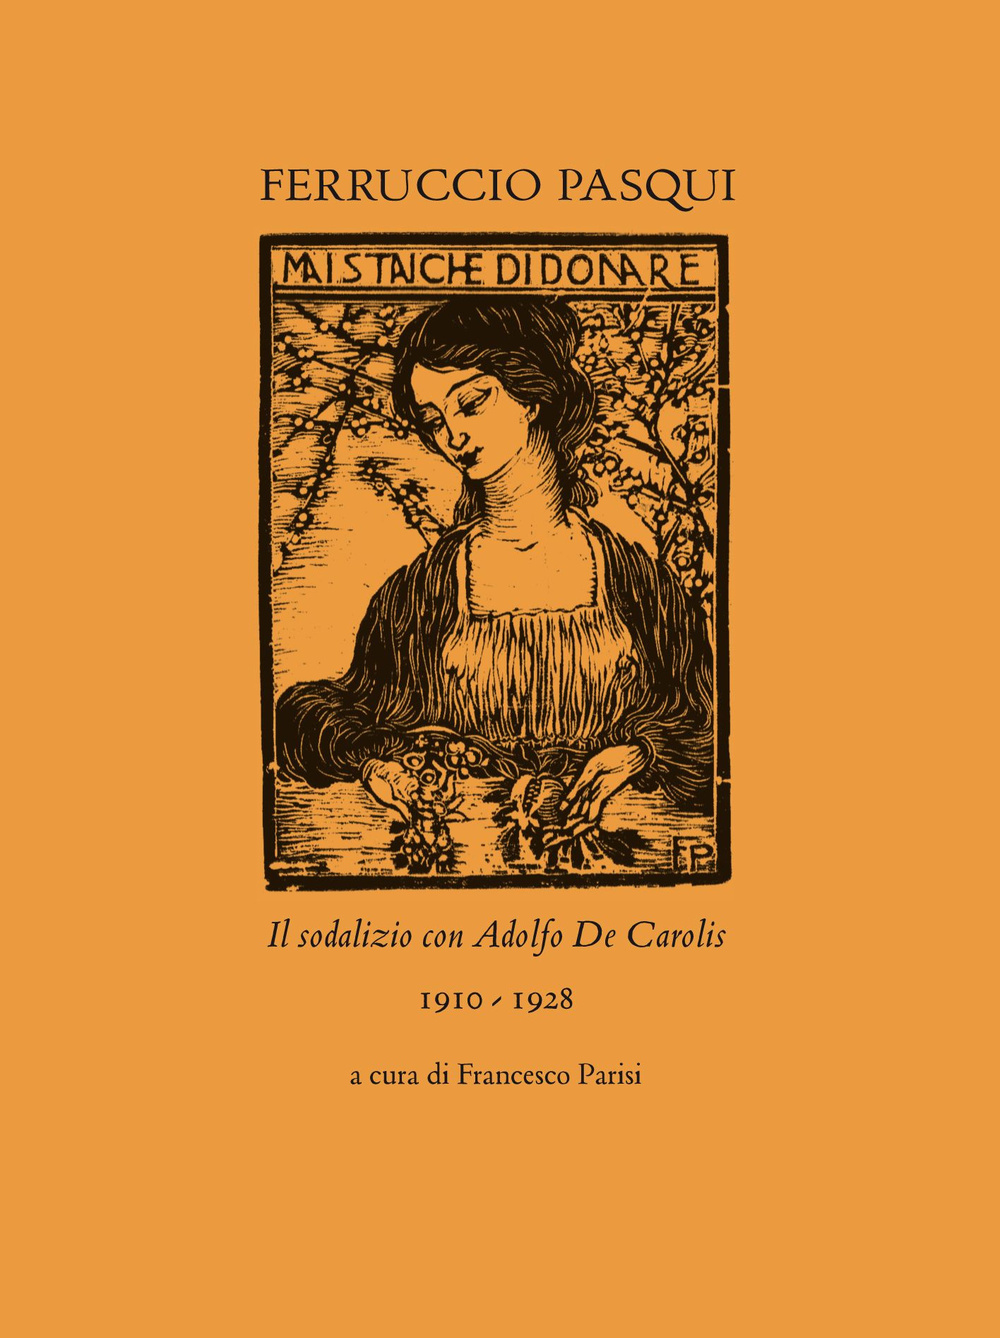 Ferruccio Pasqui. Il sodalizio con Adolfo De Carolis 1910-1928